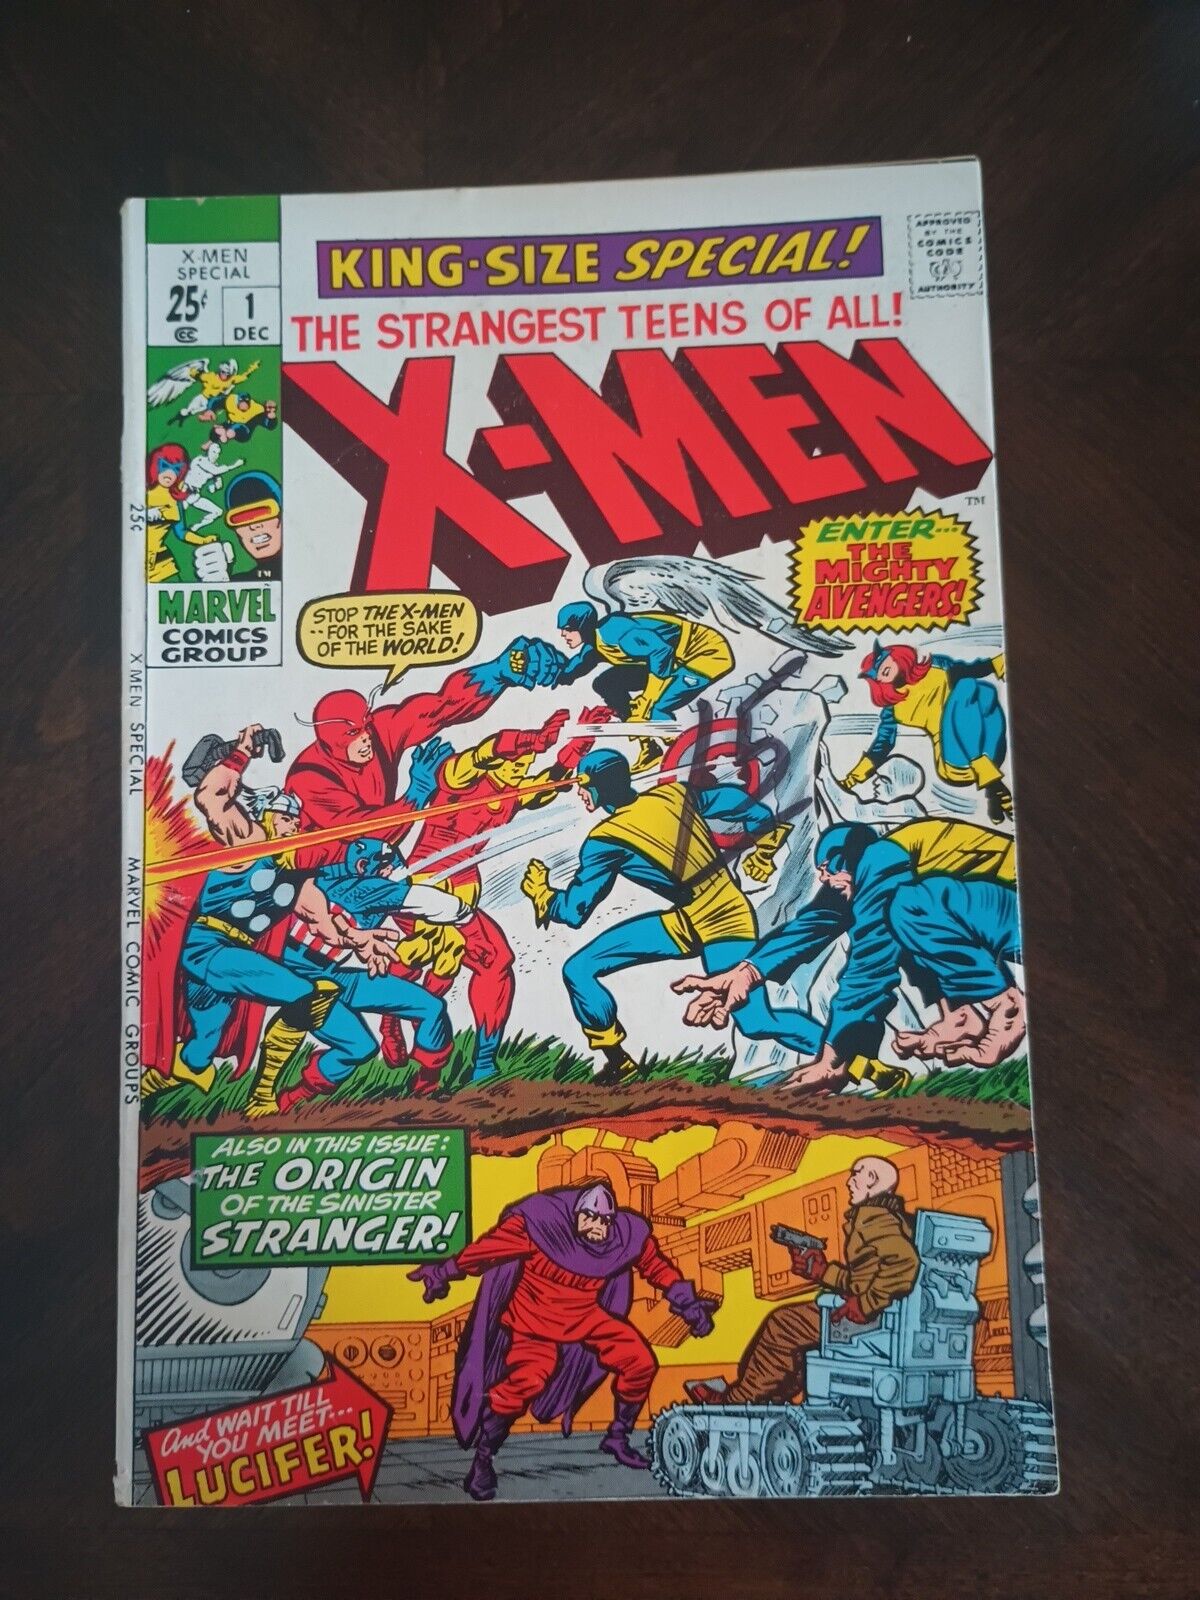 X-Men King Size Special #1 Marvel Comics Avengers vs X-men/Origin Stranger 1970